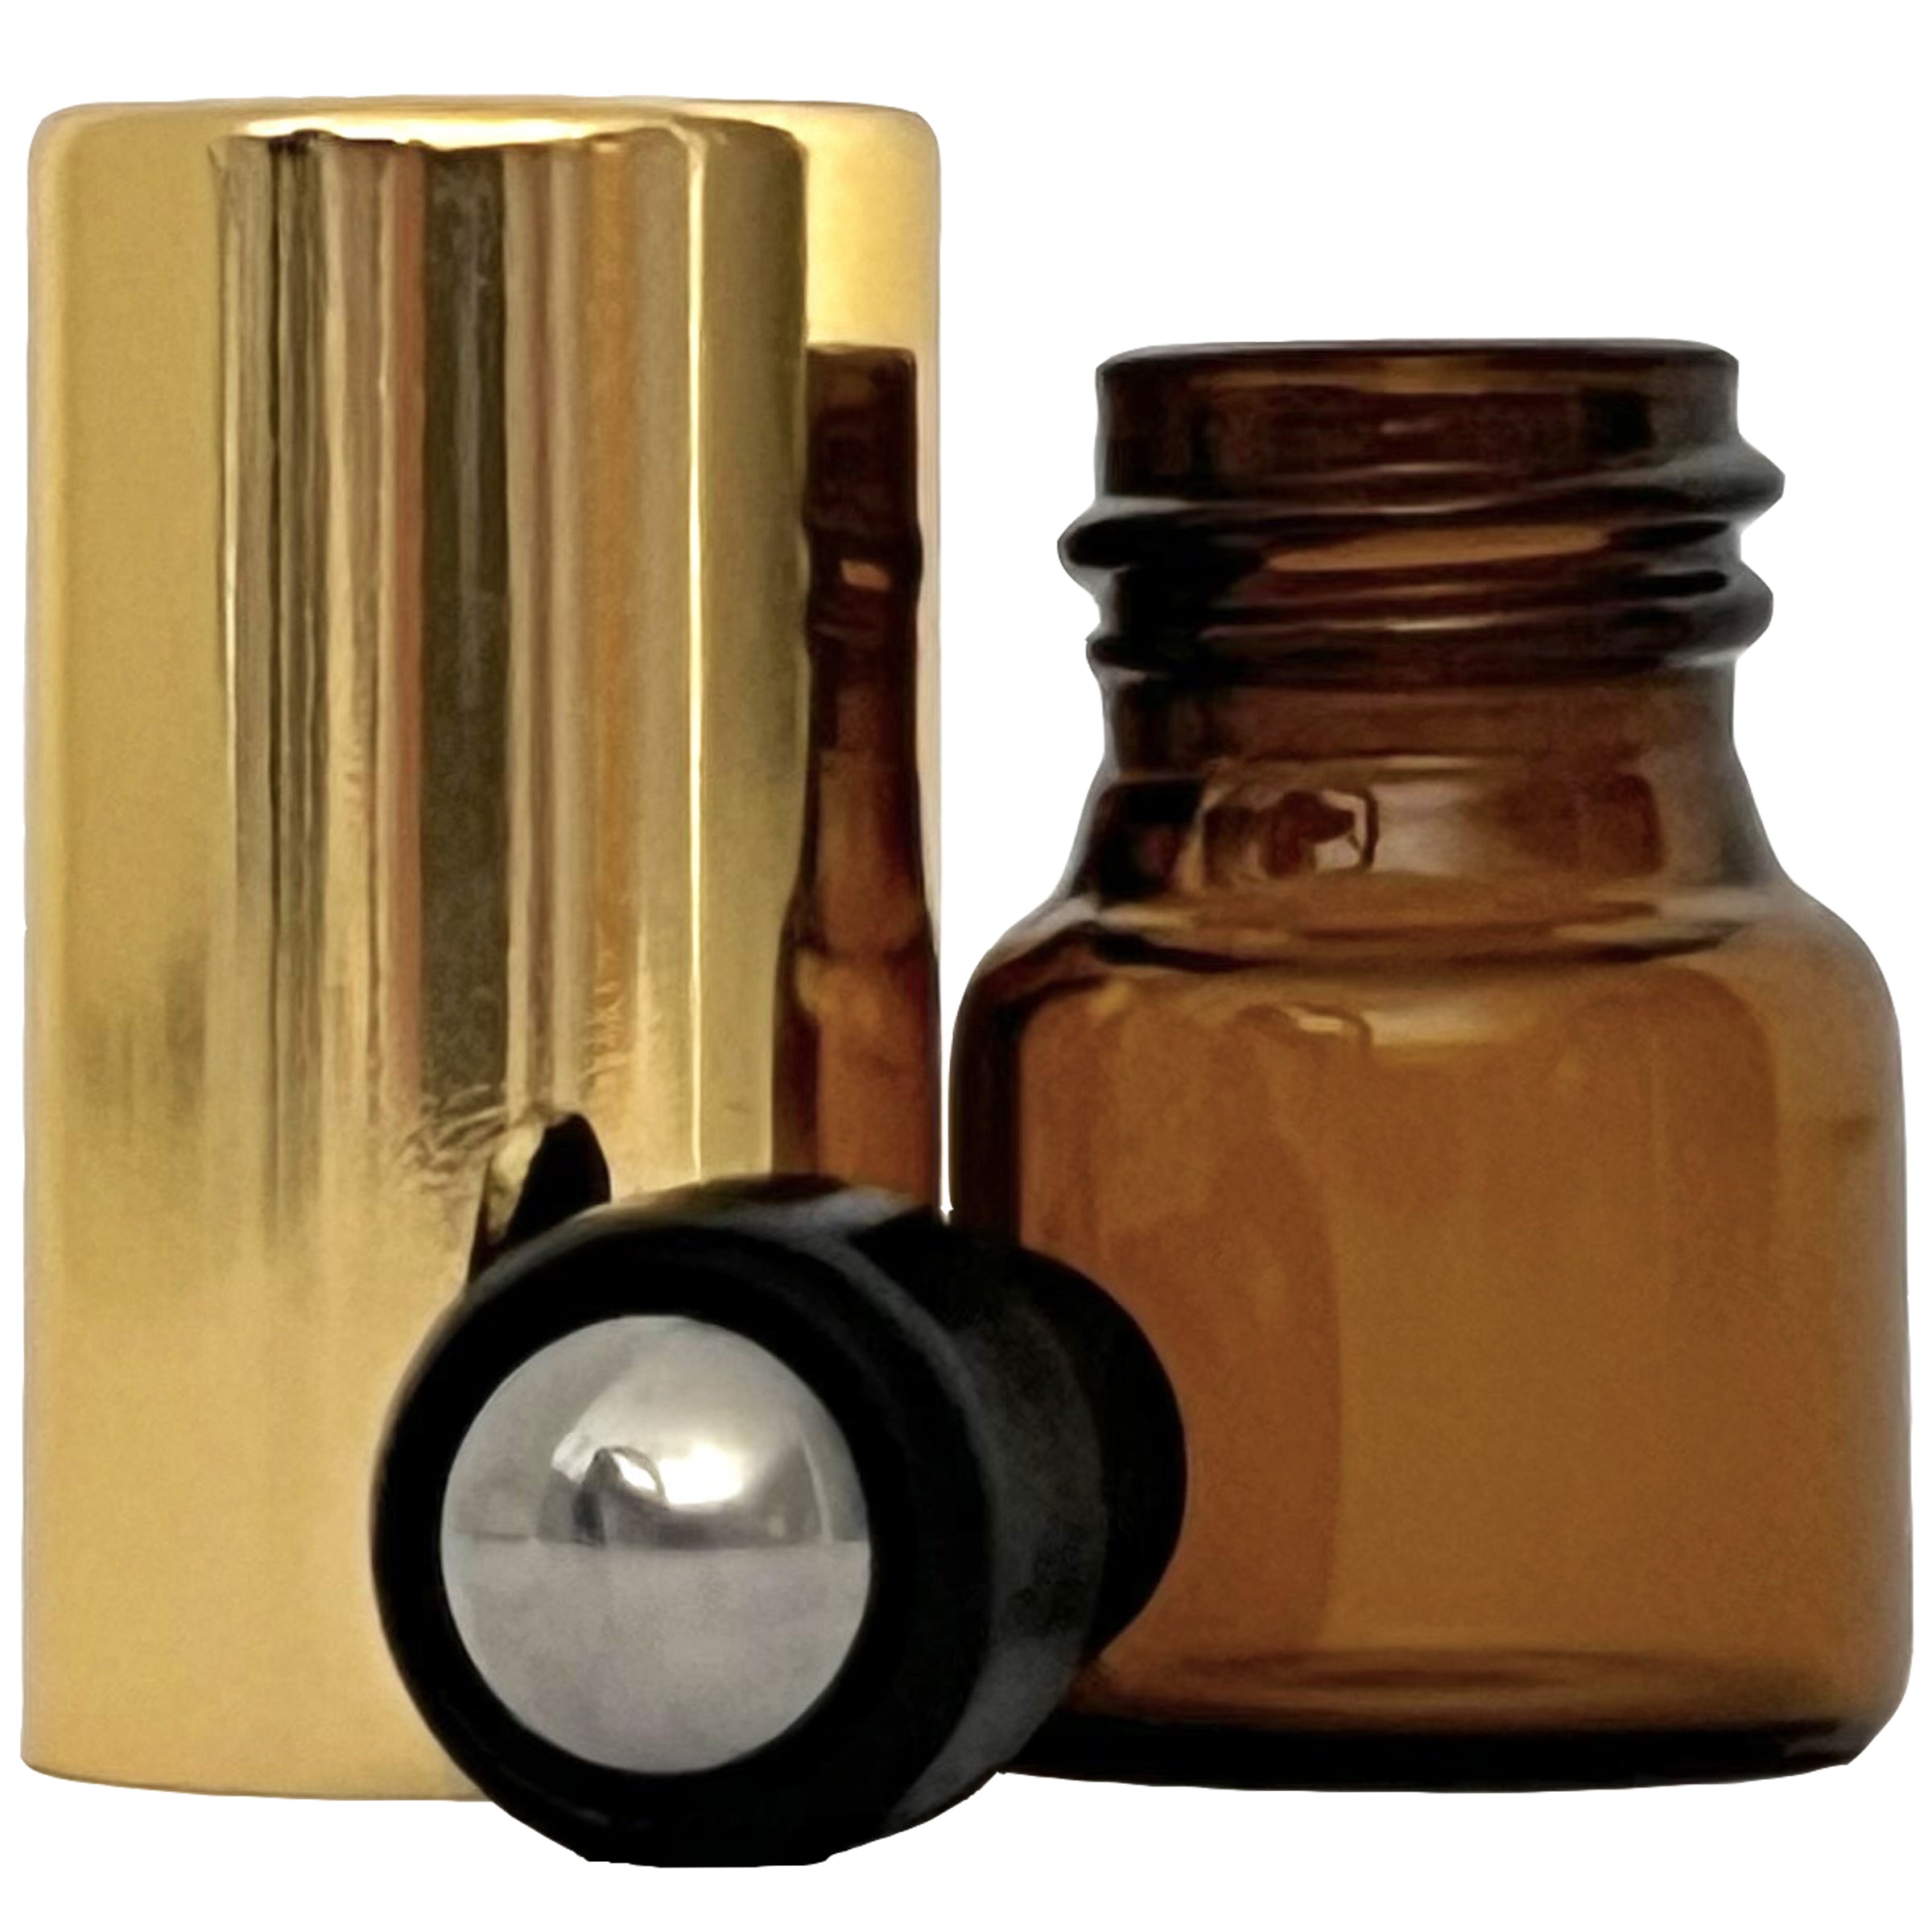 1ml 0.03oz Amber Glass Roll On Roller Bottles Gold Caps